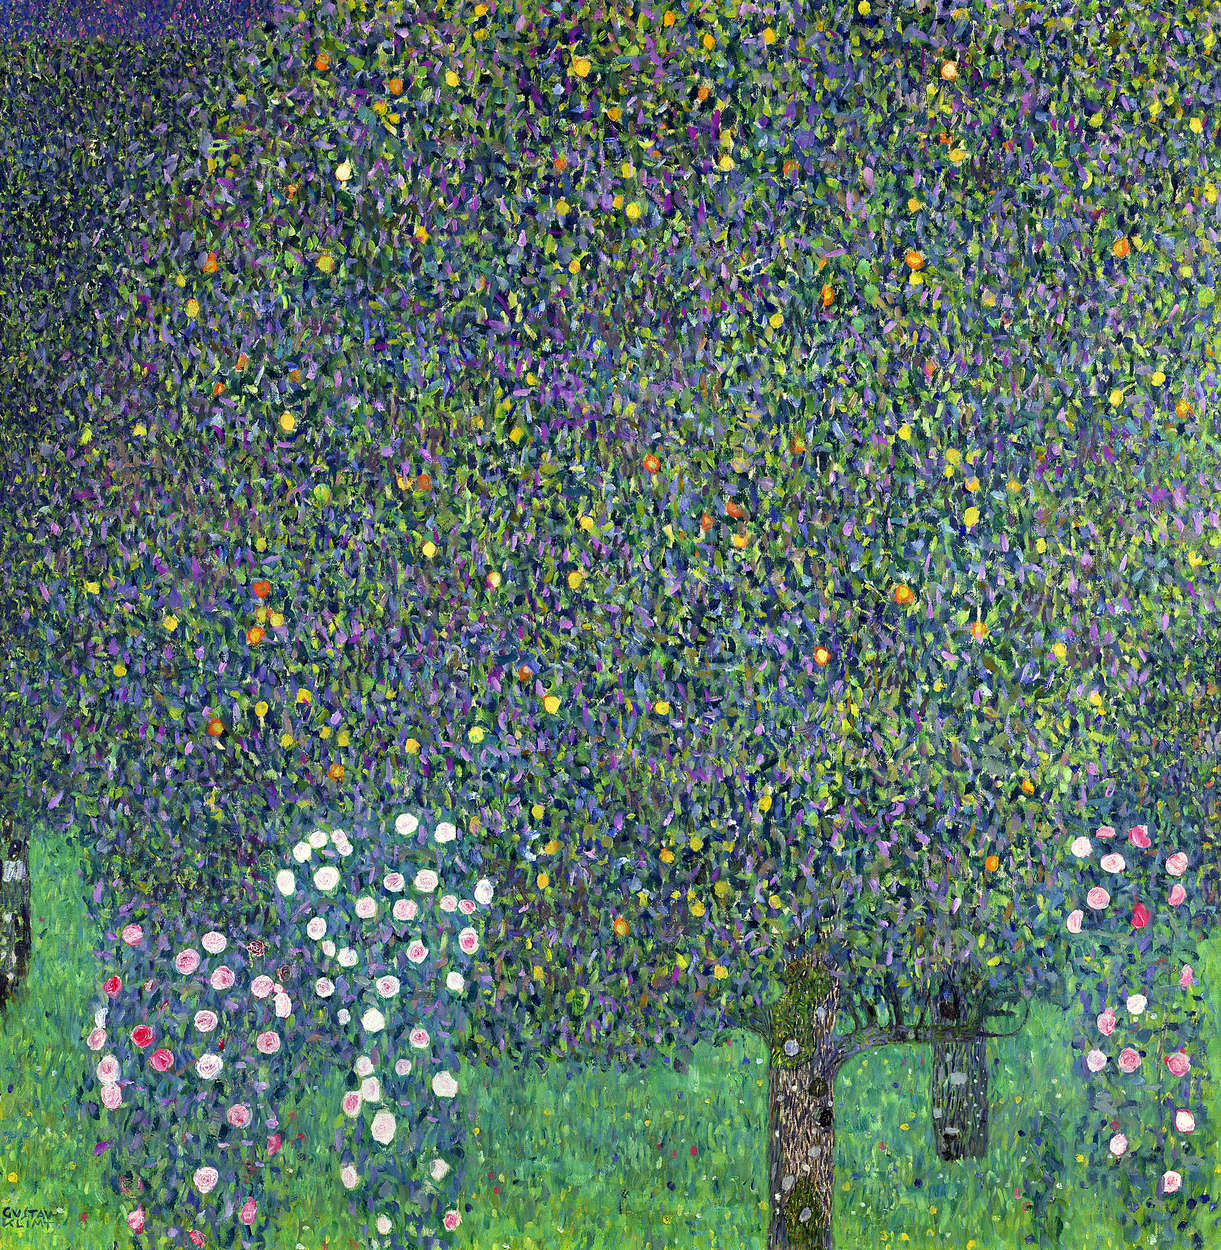             Rozen onder de bomen" muurschildering van Gustav Klimt
        